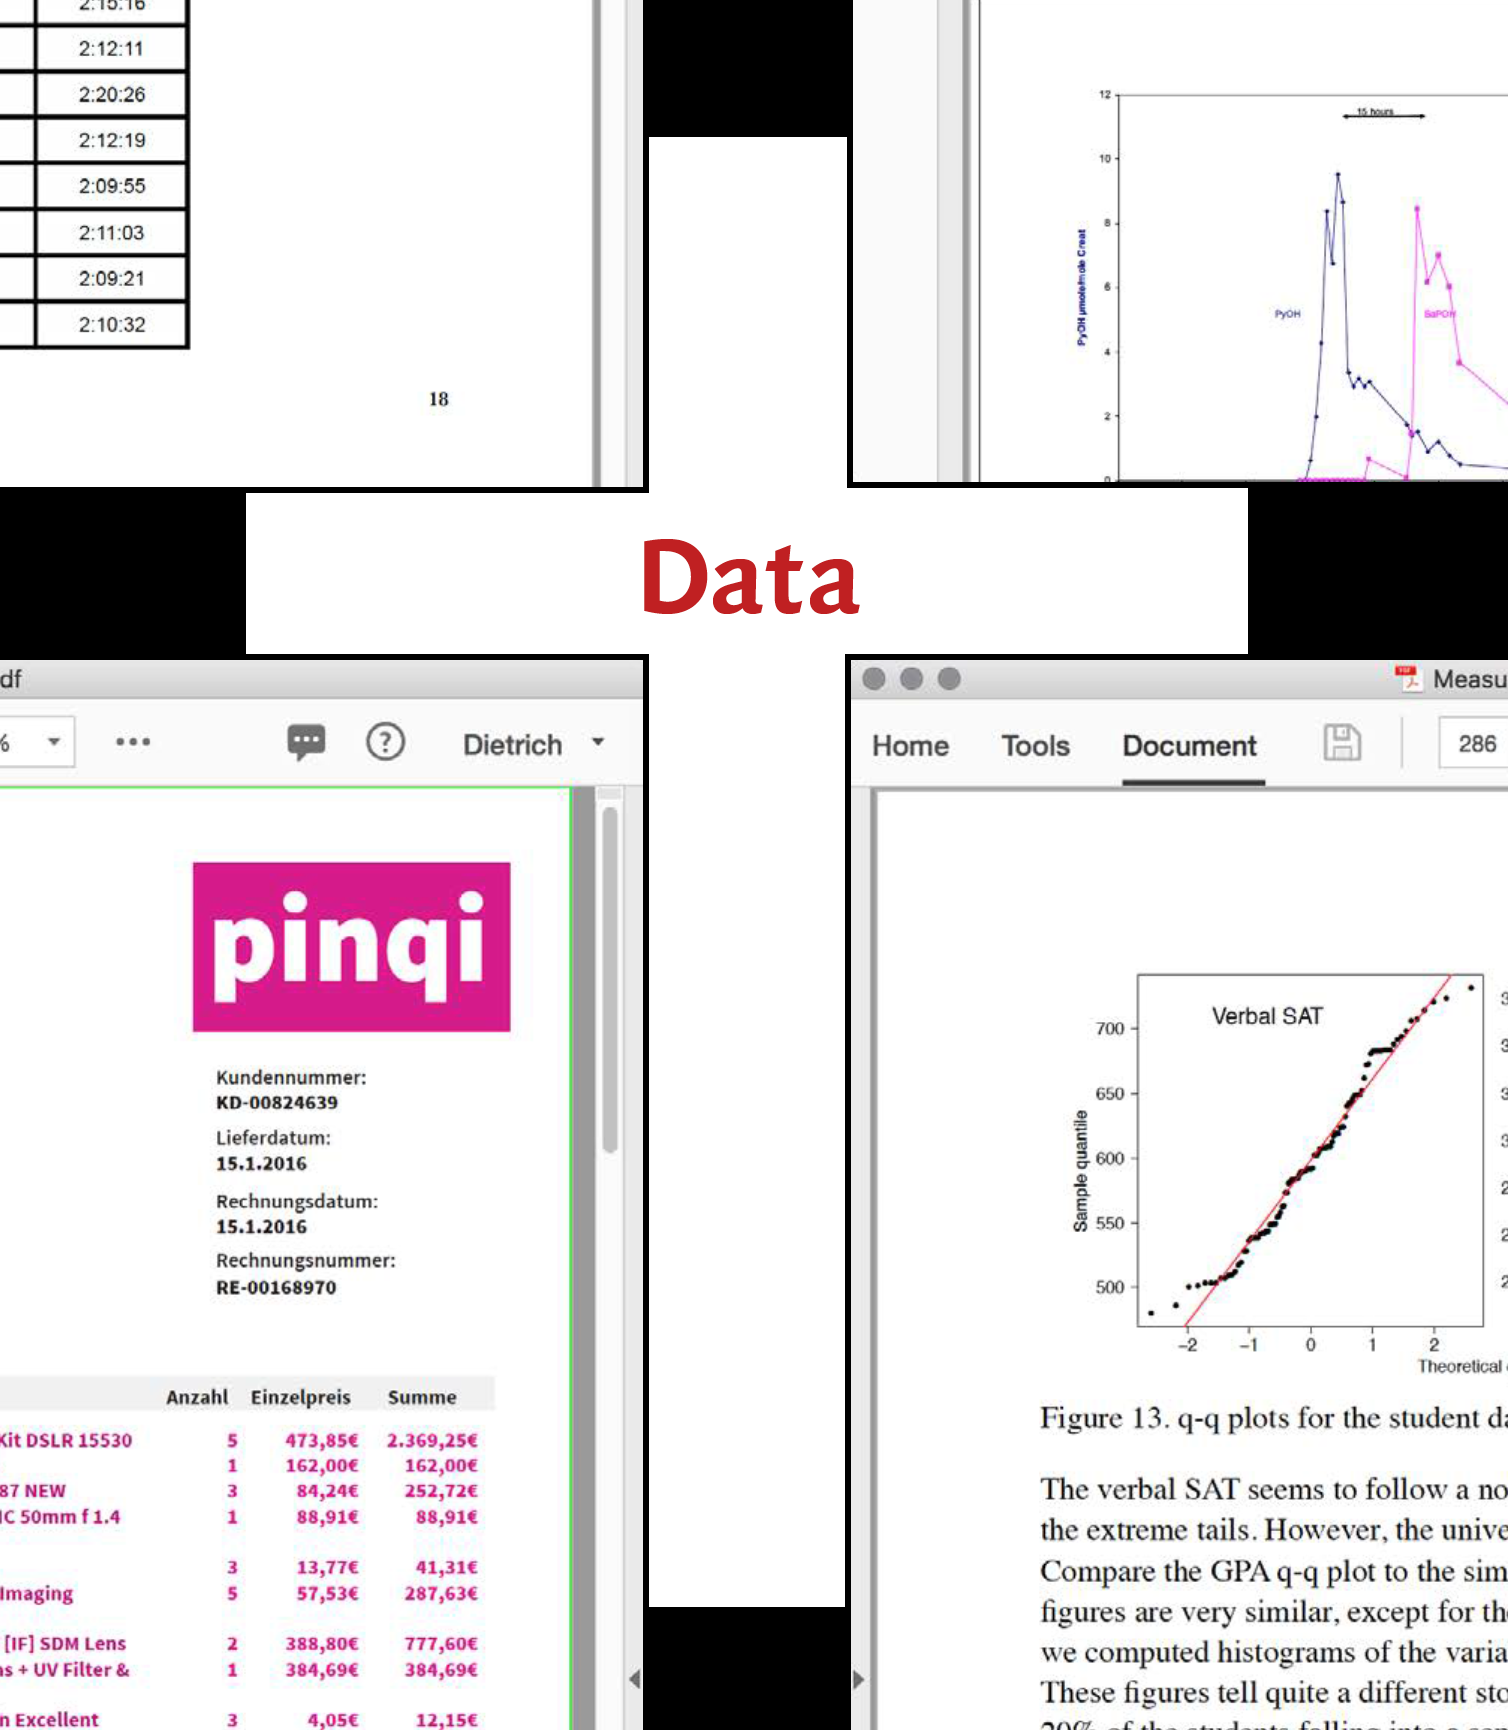 Is PDF where data dies?